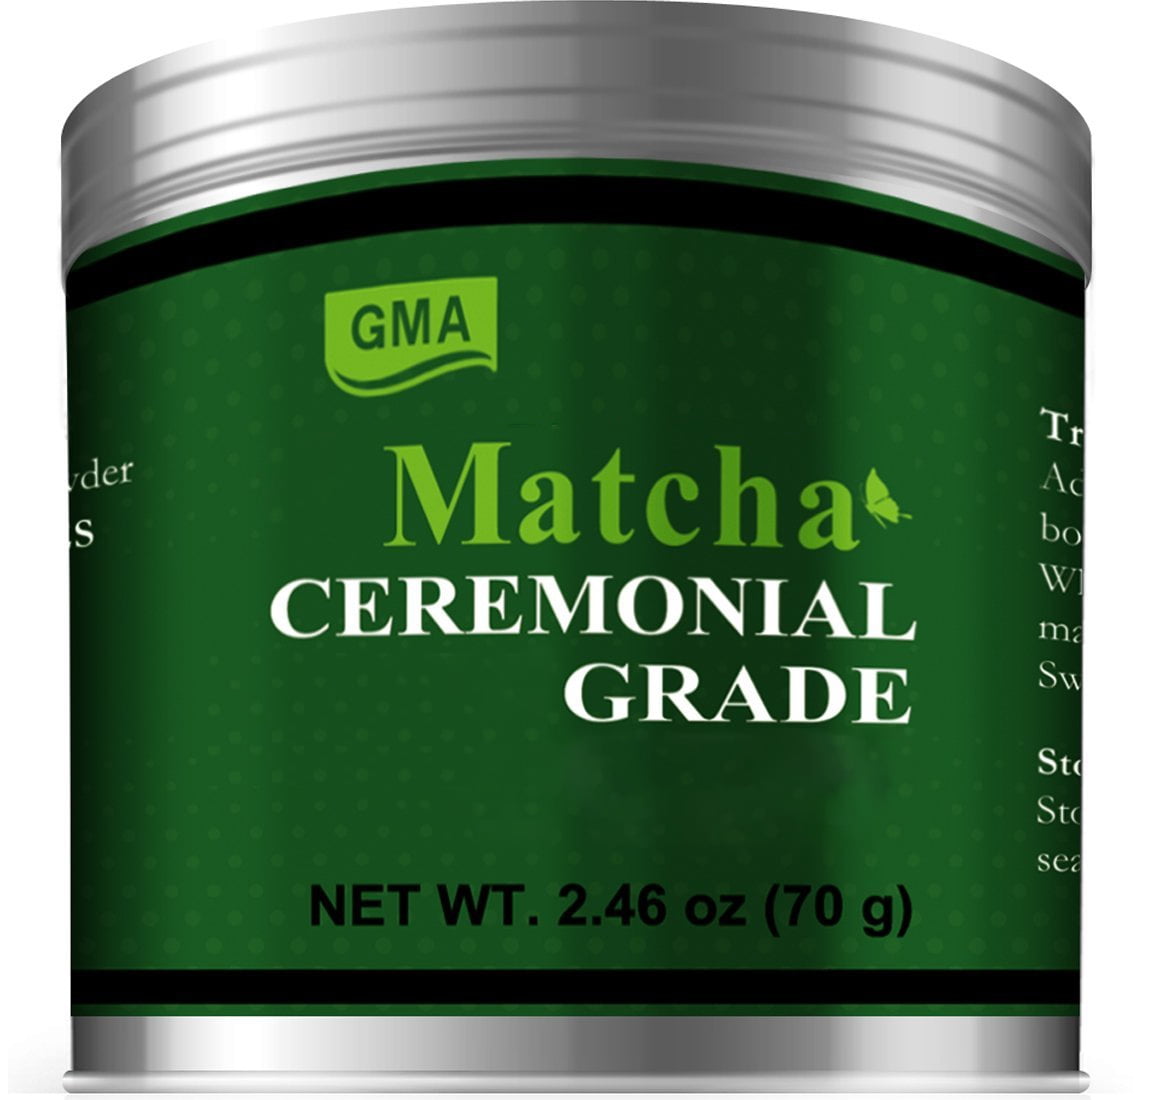  GMA Polvo de té verde matcha de grado ceremonial 2.46 oz polvo  de matcha ceremonial - Para elaboración directa de cerveza y bebida 2.46-01  : Comida Gourmet y Alimentos